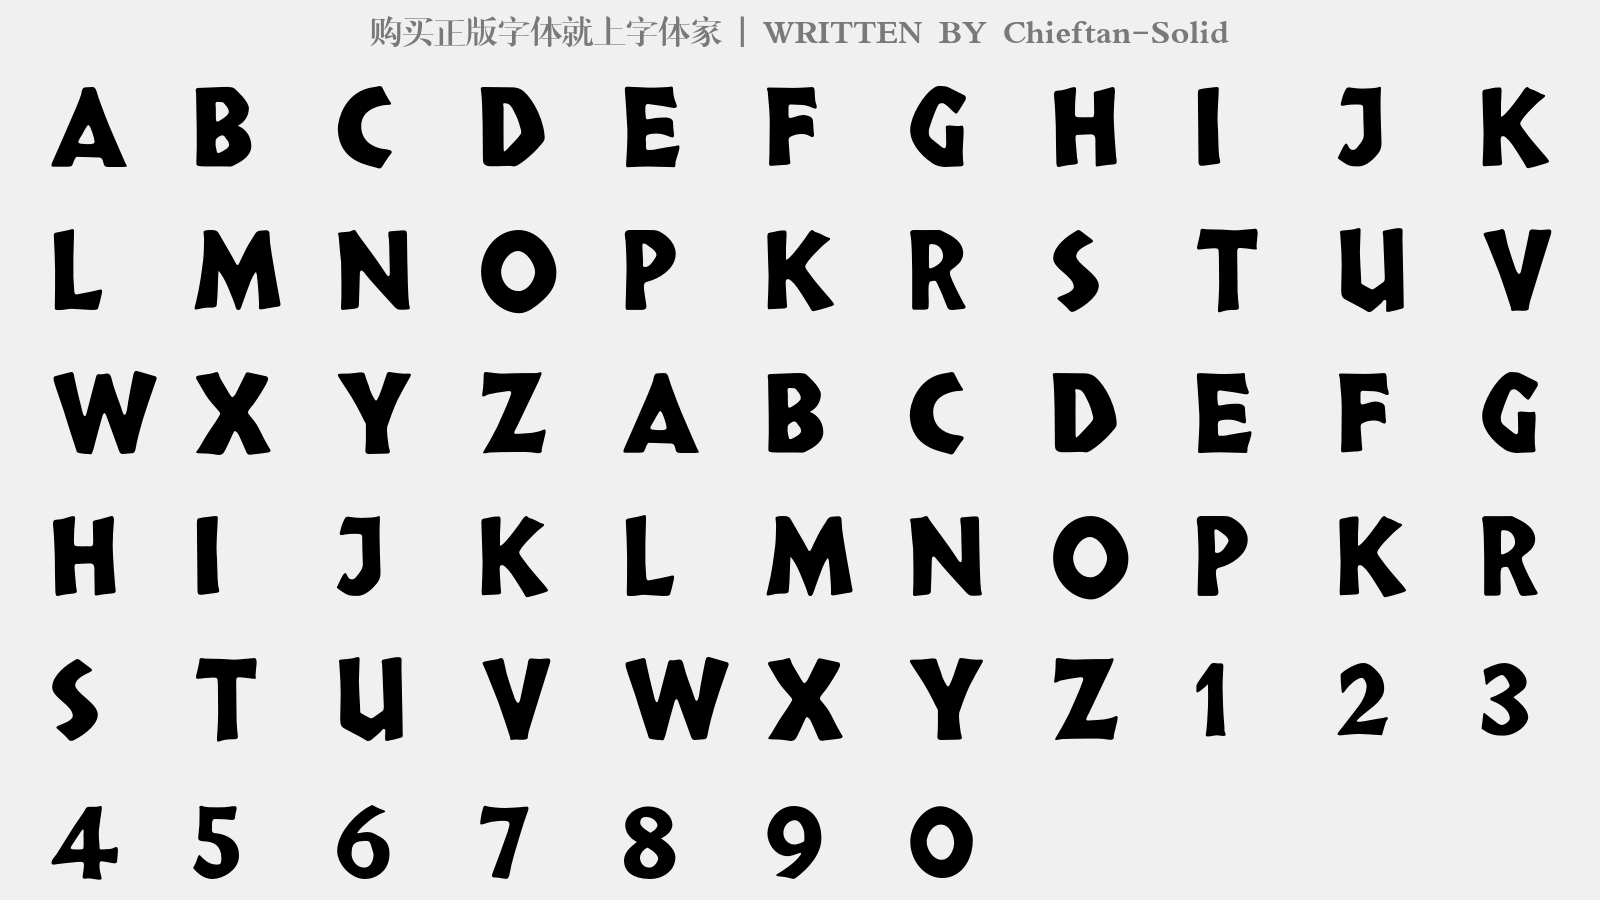 Chieftan-Solid - 大写字母/小写字母/数字